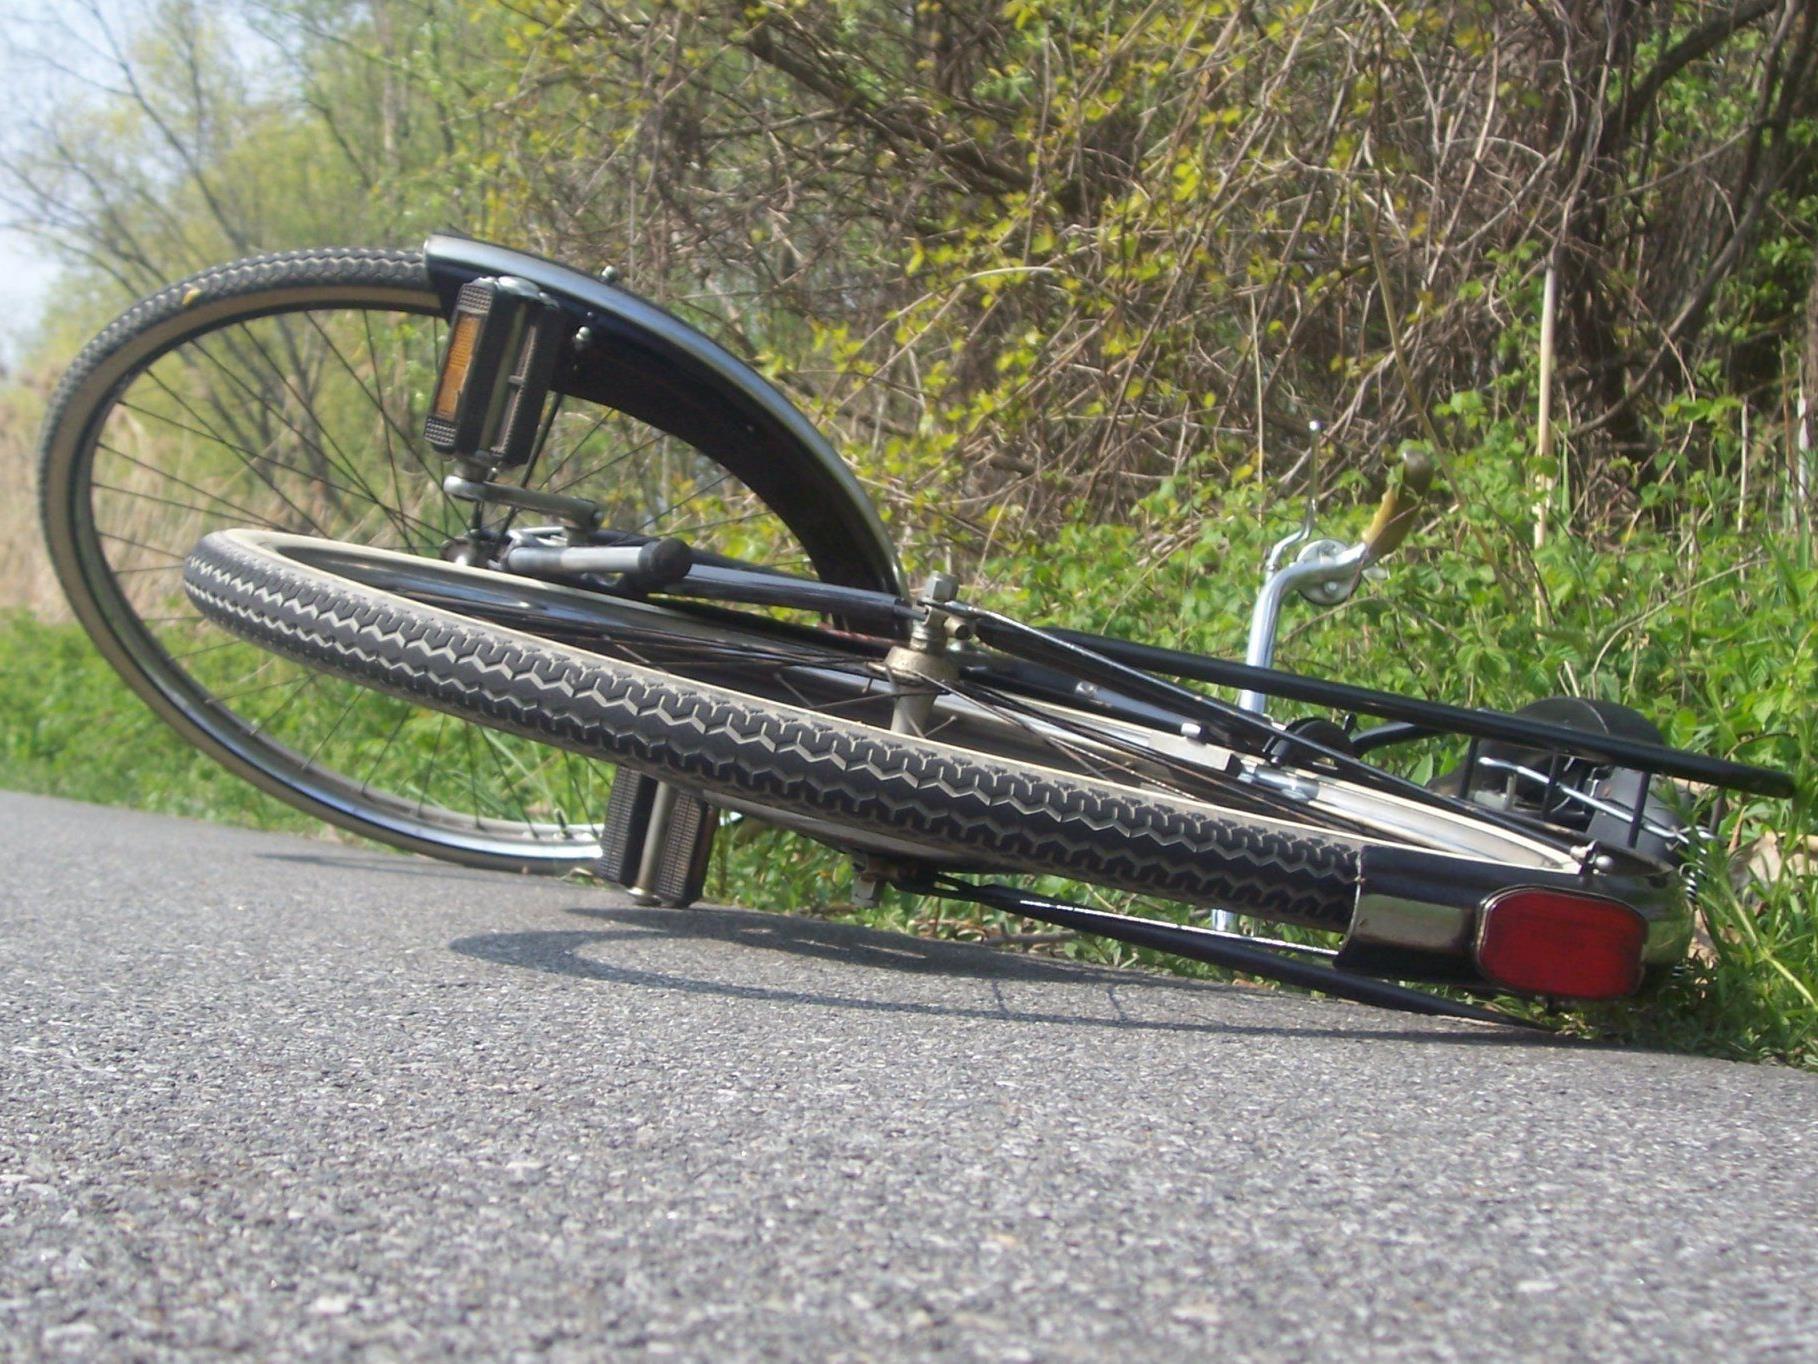 46-jähriger Radfahrer stürzte in Dornbirn und wurde unbestimmten Grades verletzt.